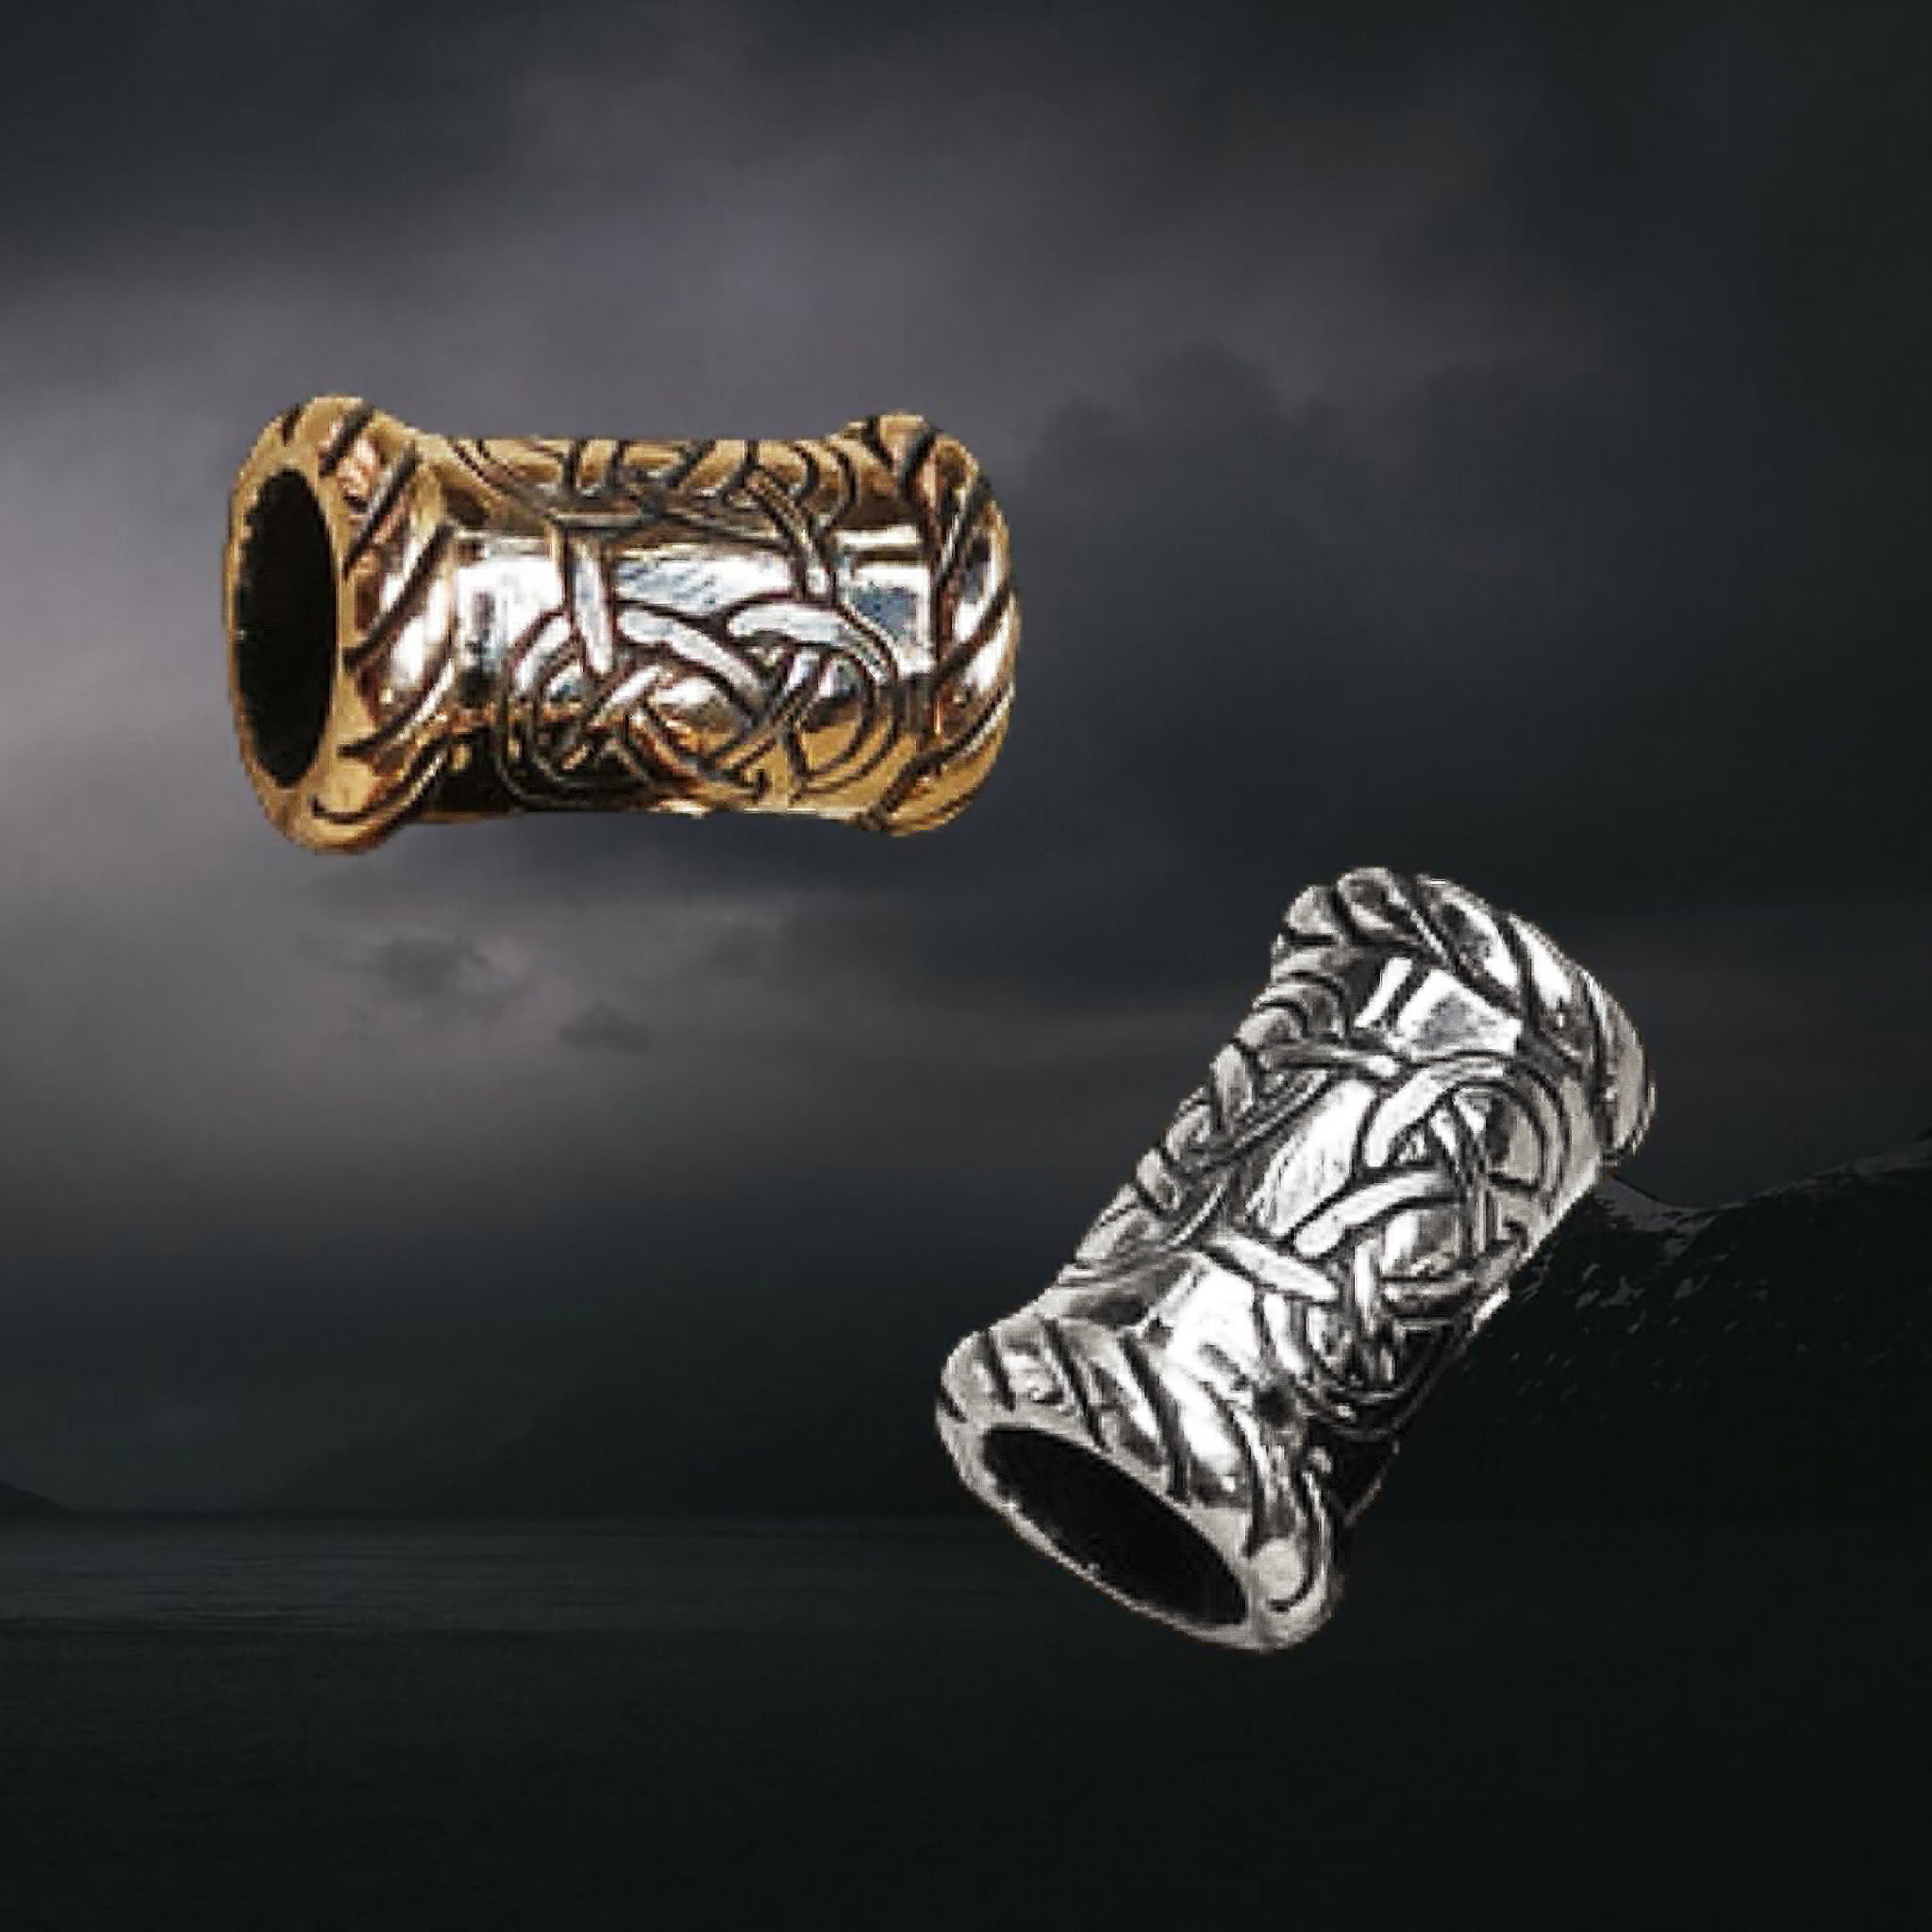 Medium Knotwork Viking Beard Rings in Bronze & Silver on Dark Skies Background